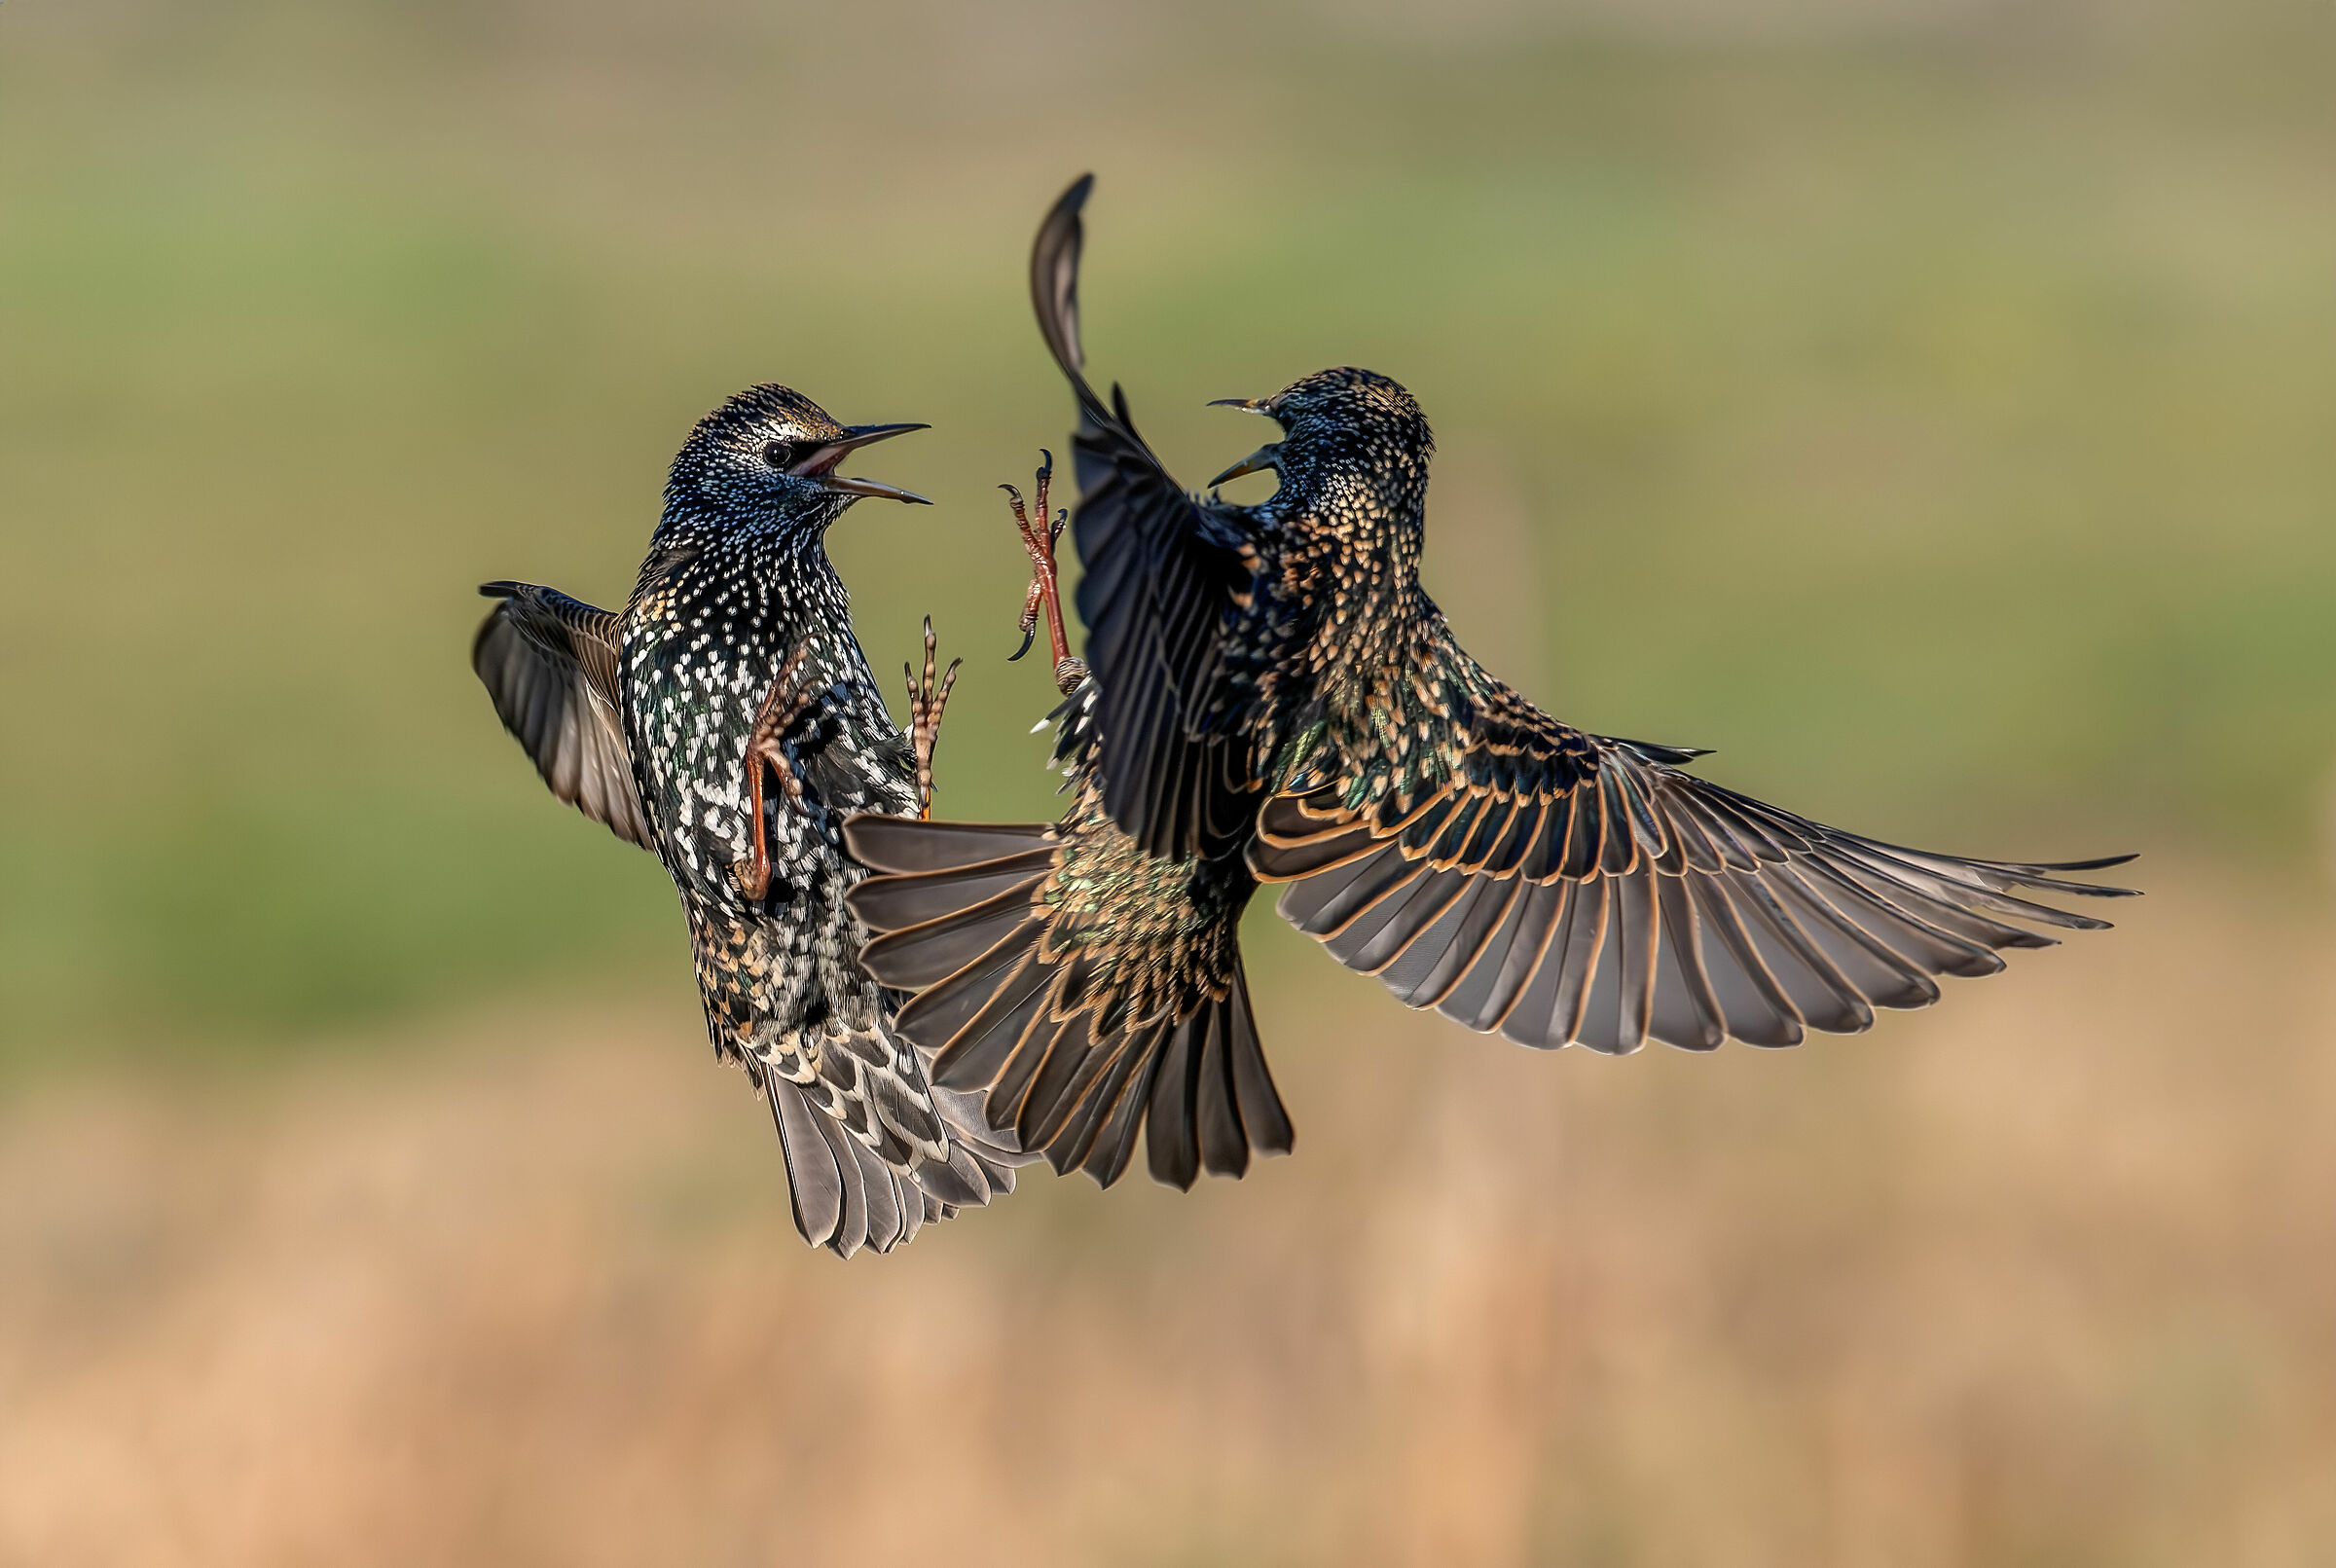 Combat starlings at altitude #capannocora...